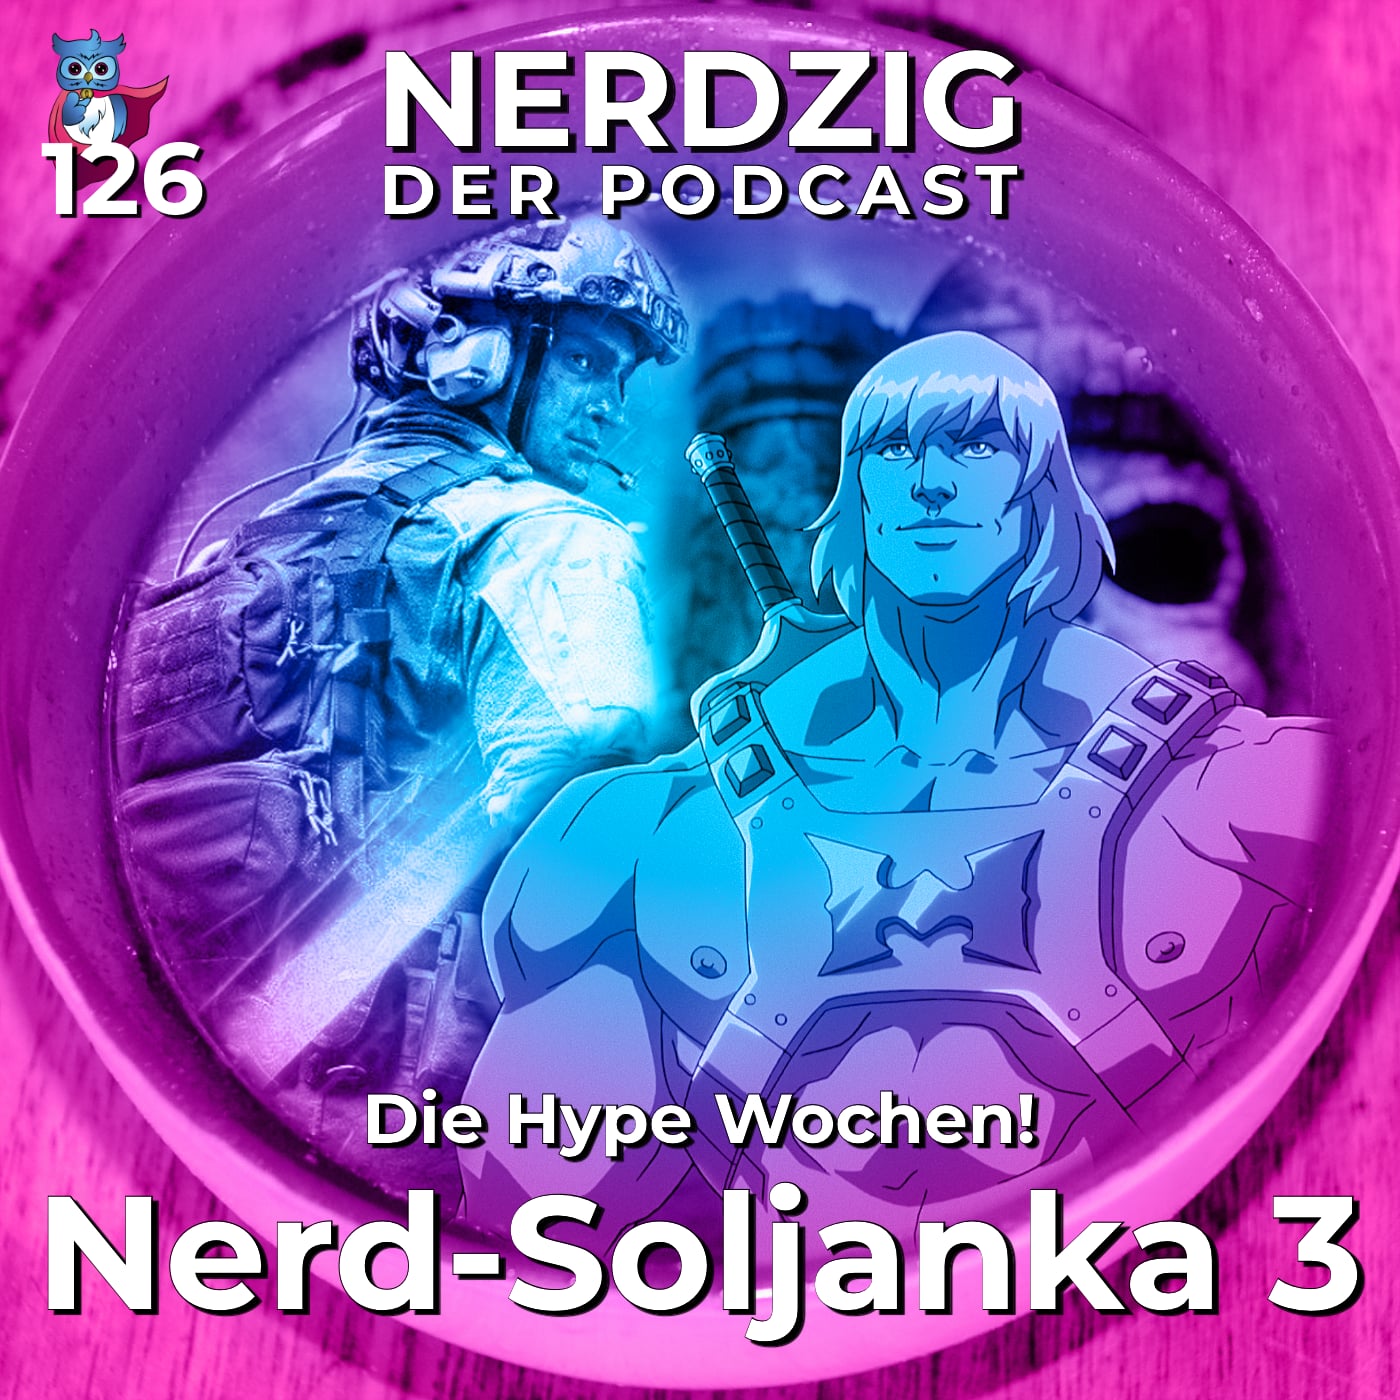 Nerdzig - Der Podcast #126 – Nerd-Soljanka 3: Die Hype-Wochen